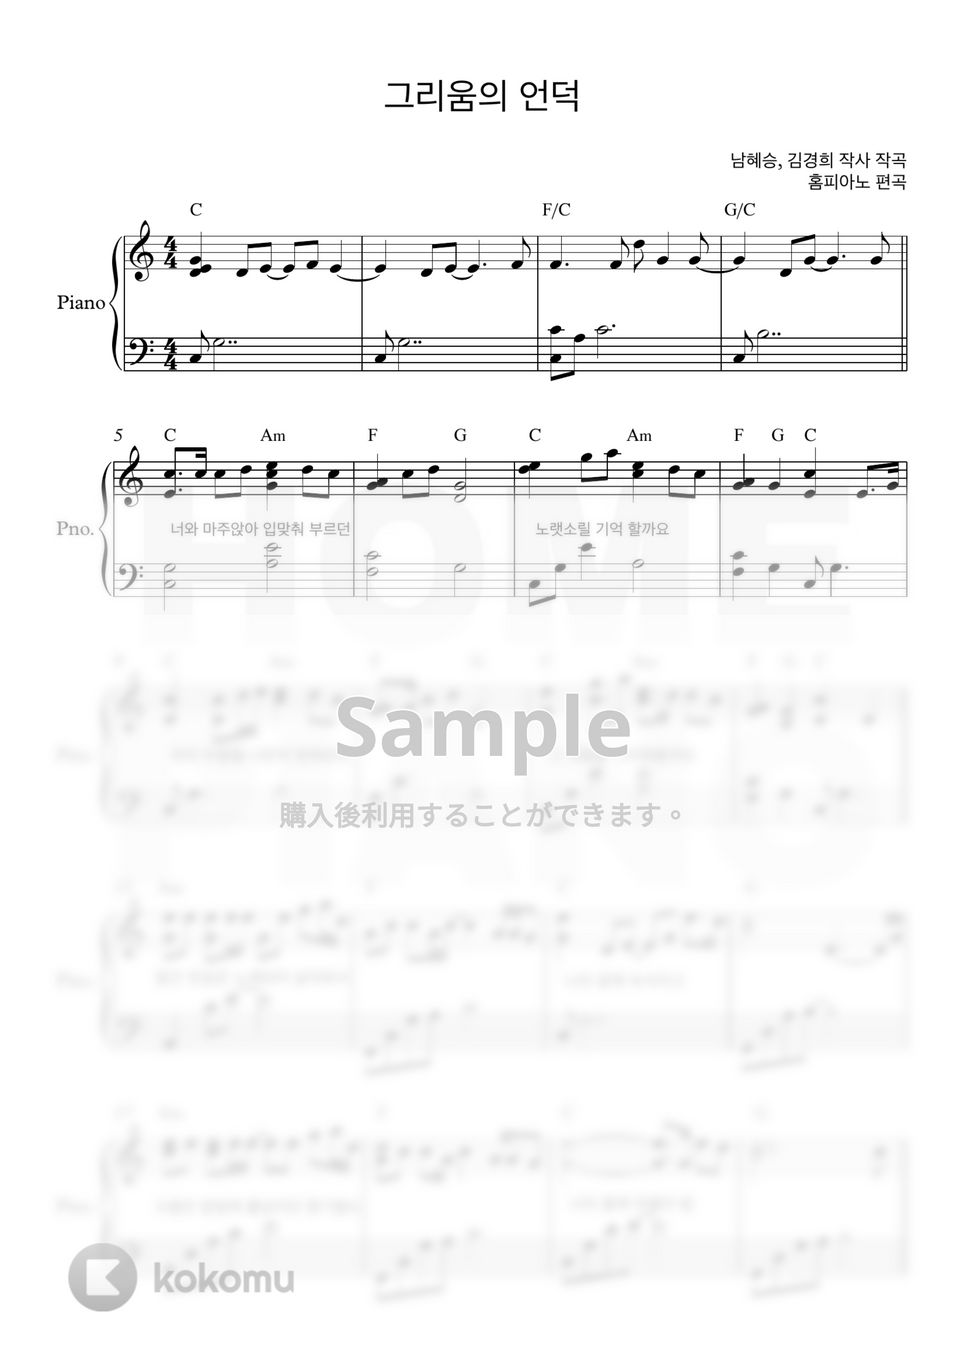 愛の不時着 OST - 懐かしの丘 (上級) by HOME PIANO